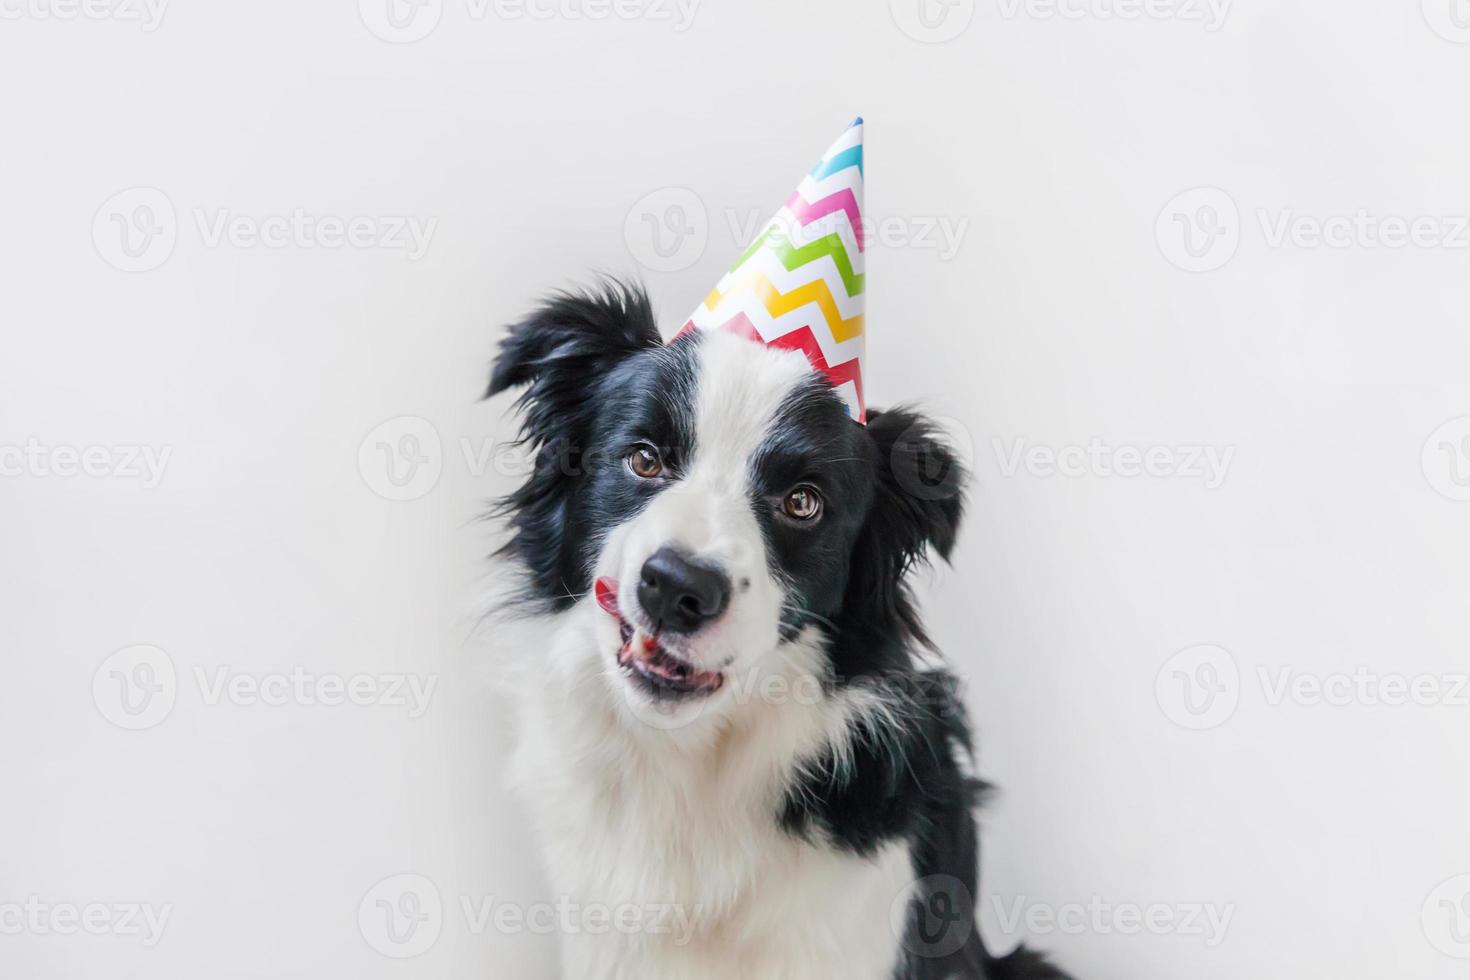 grappig portret van schattige lachende puppy hondje border collie dragen verjaardag dwaze hoed kijken camera geïsoleerd op een witte achtergrond. gelukkig verjaardagsfeestje concept. grappige huisdieren dieren leven. foto